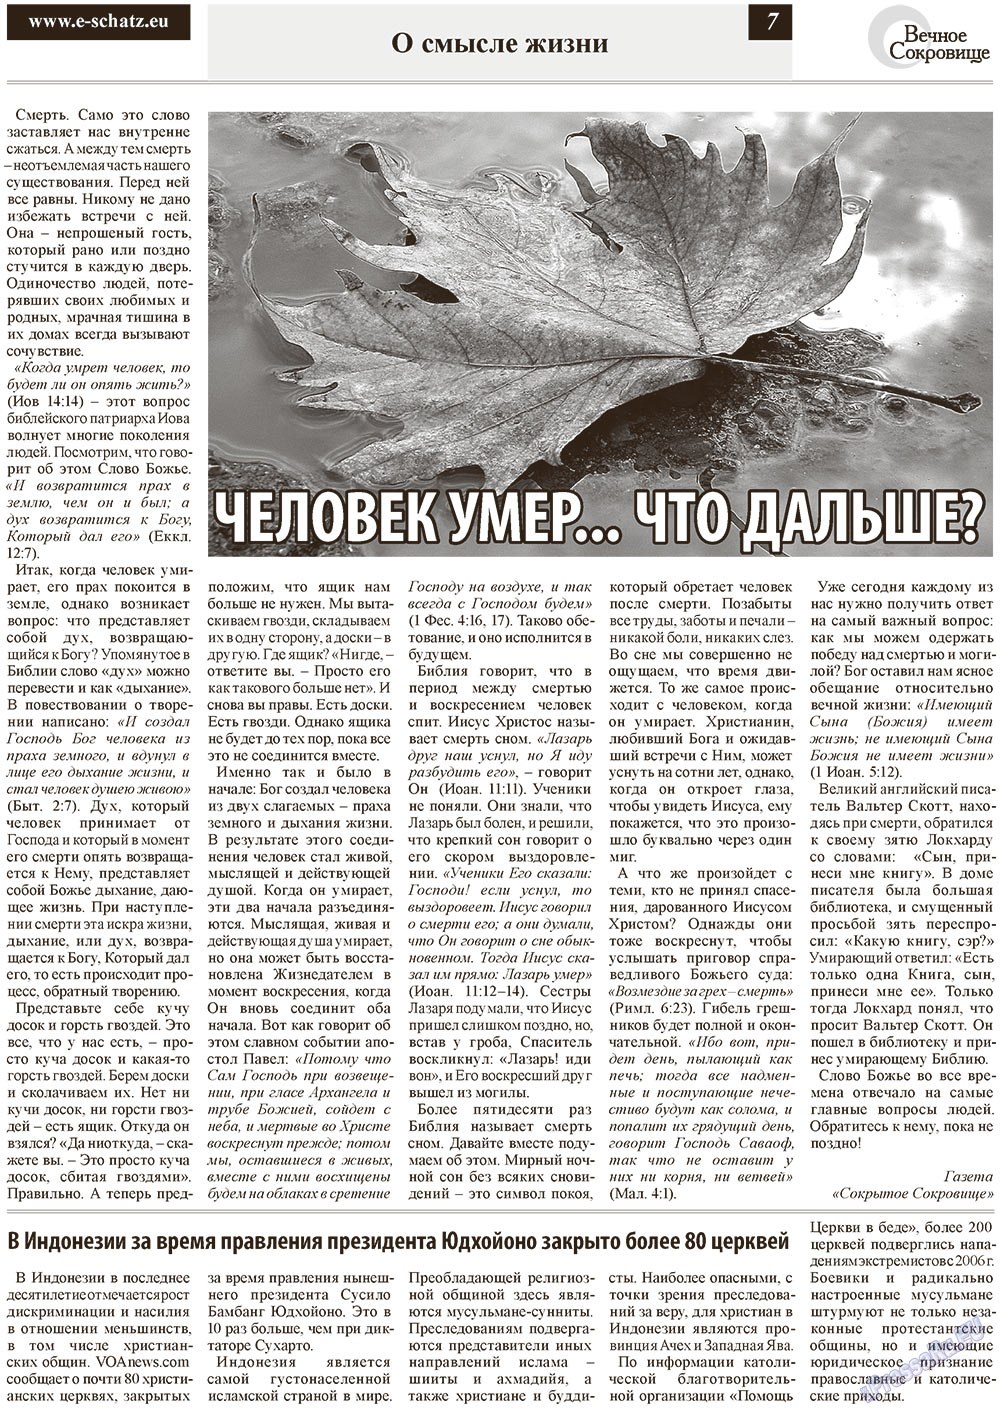 Вечное сокровище (газета). 2012 год, номер 6, стр. 7